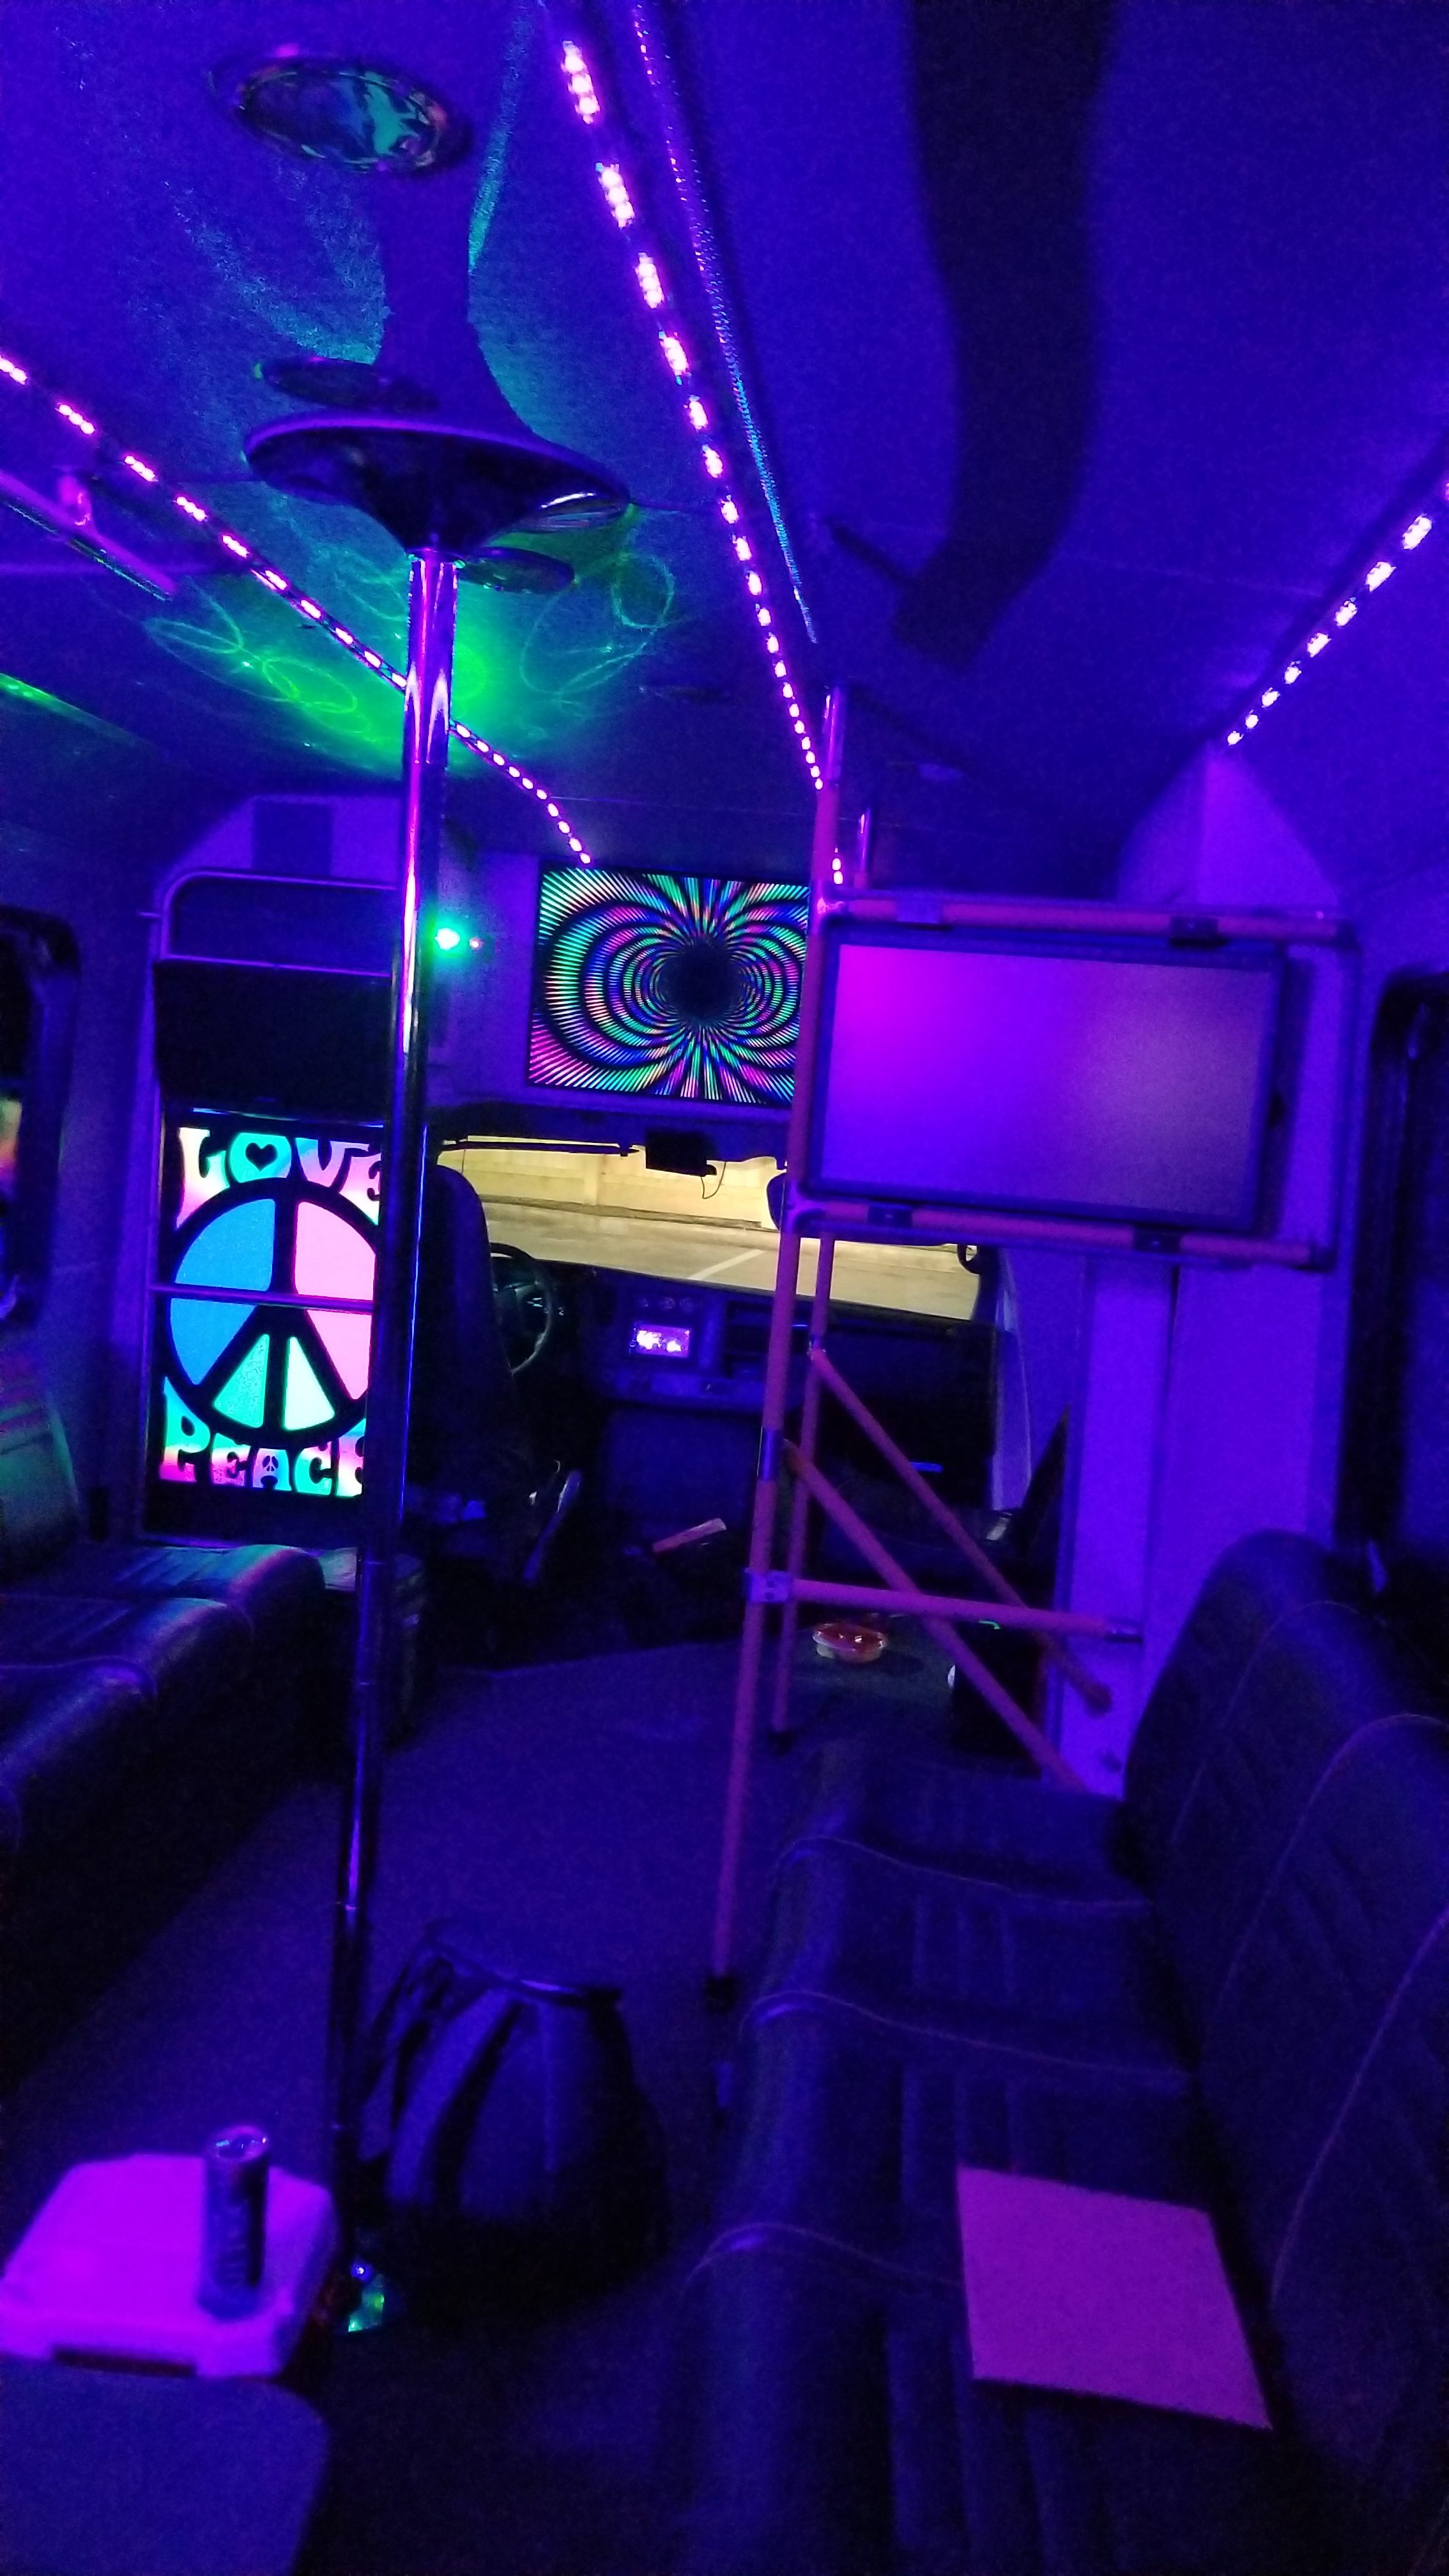 17 Passenger Party Bus